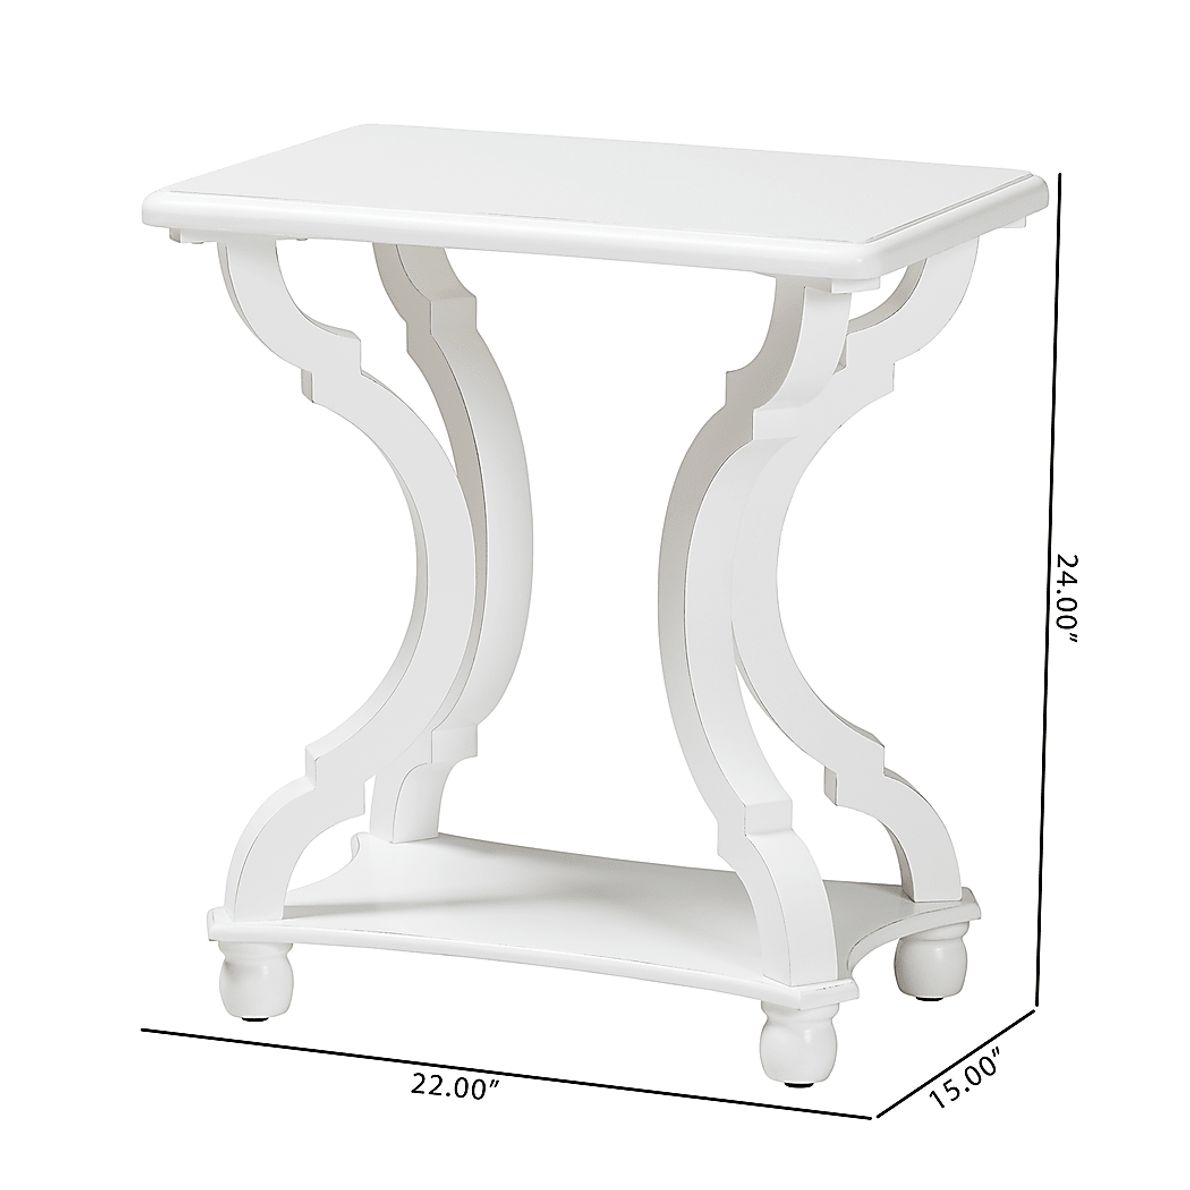 Grognet White End Table